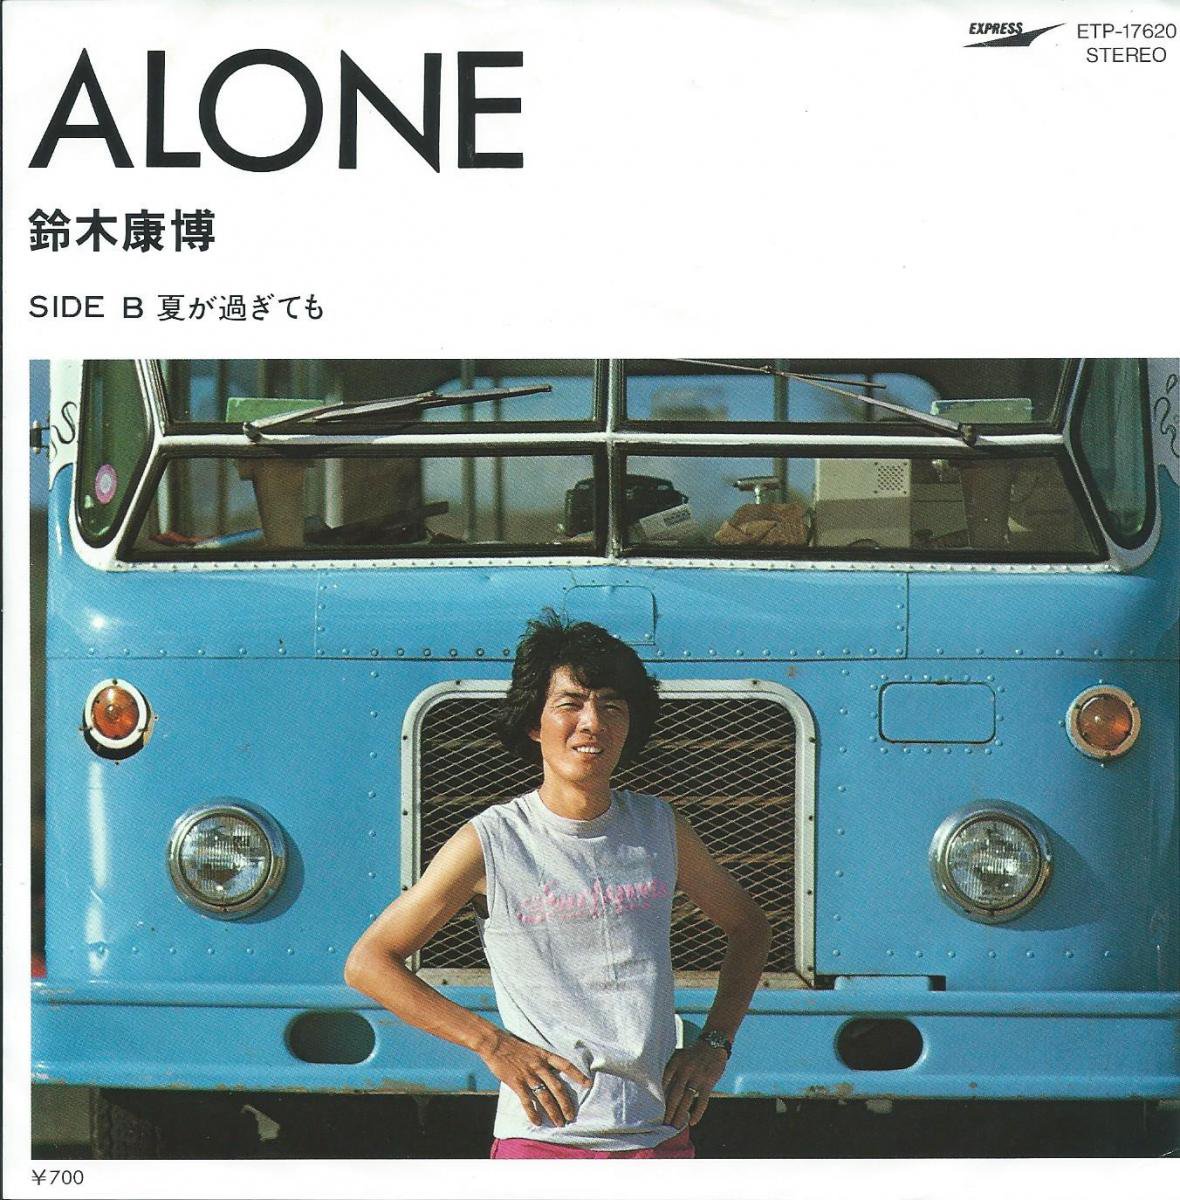 鈴木康博 YASUHIRO SUZUKI / ALONE / 夏が過ぎても (7) - HIP TANK RECORDS